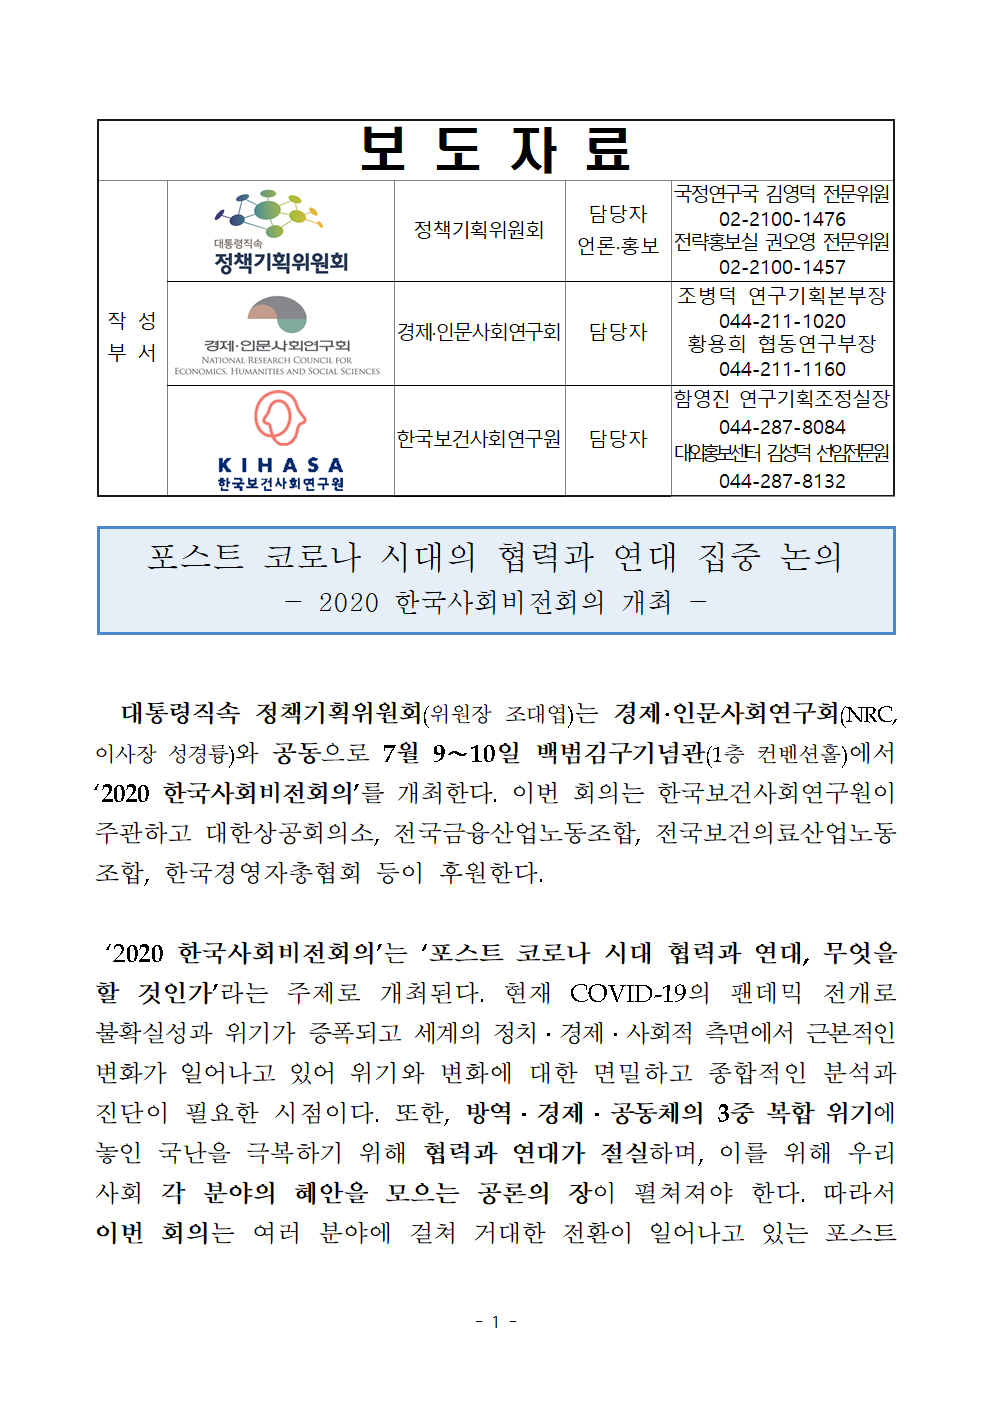 첨부파일참고 : [보도자료] 2020 한국사회비전회의 개최.hwp